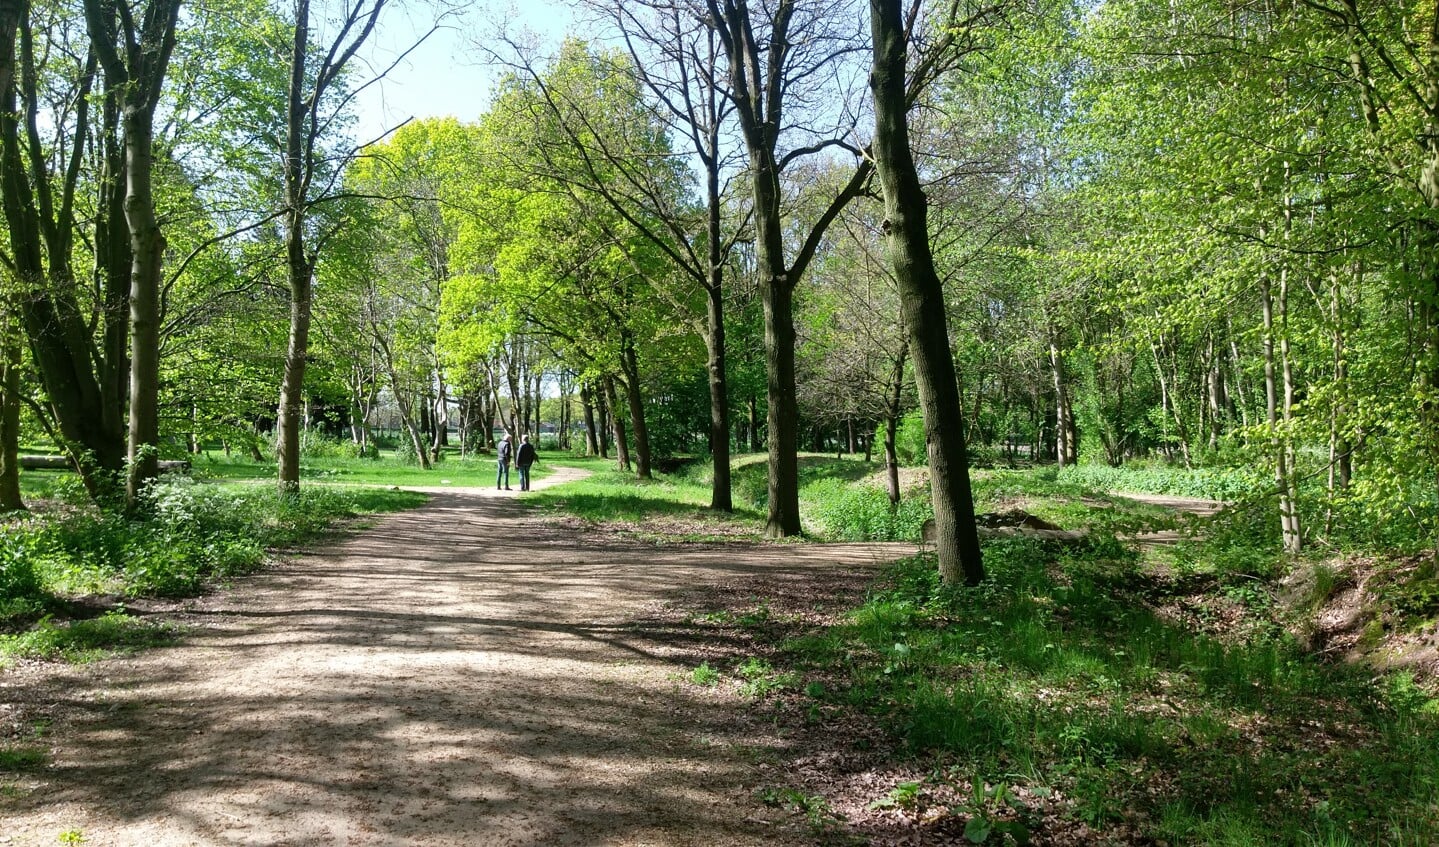 Het wandelbos (bospark) in Haps dat zondag wordt geopend.